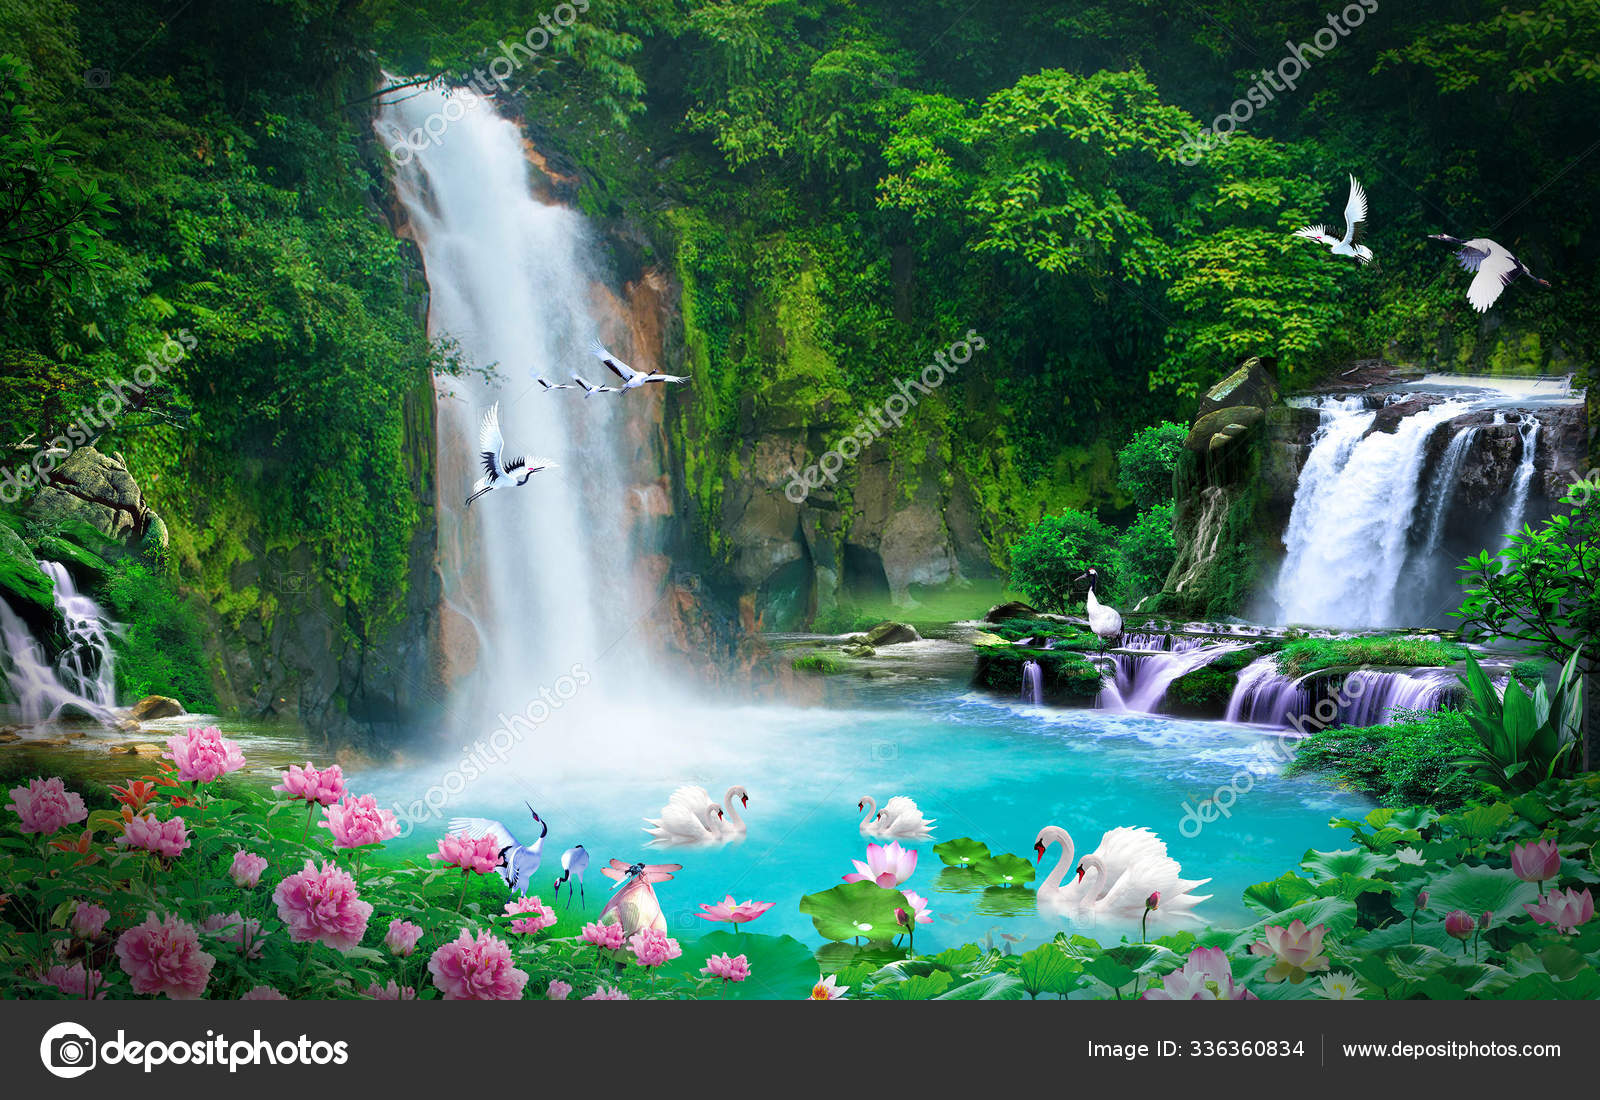 Wallpaper 3D natural waterfall view Stock Photo by ©ipinsadja ...